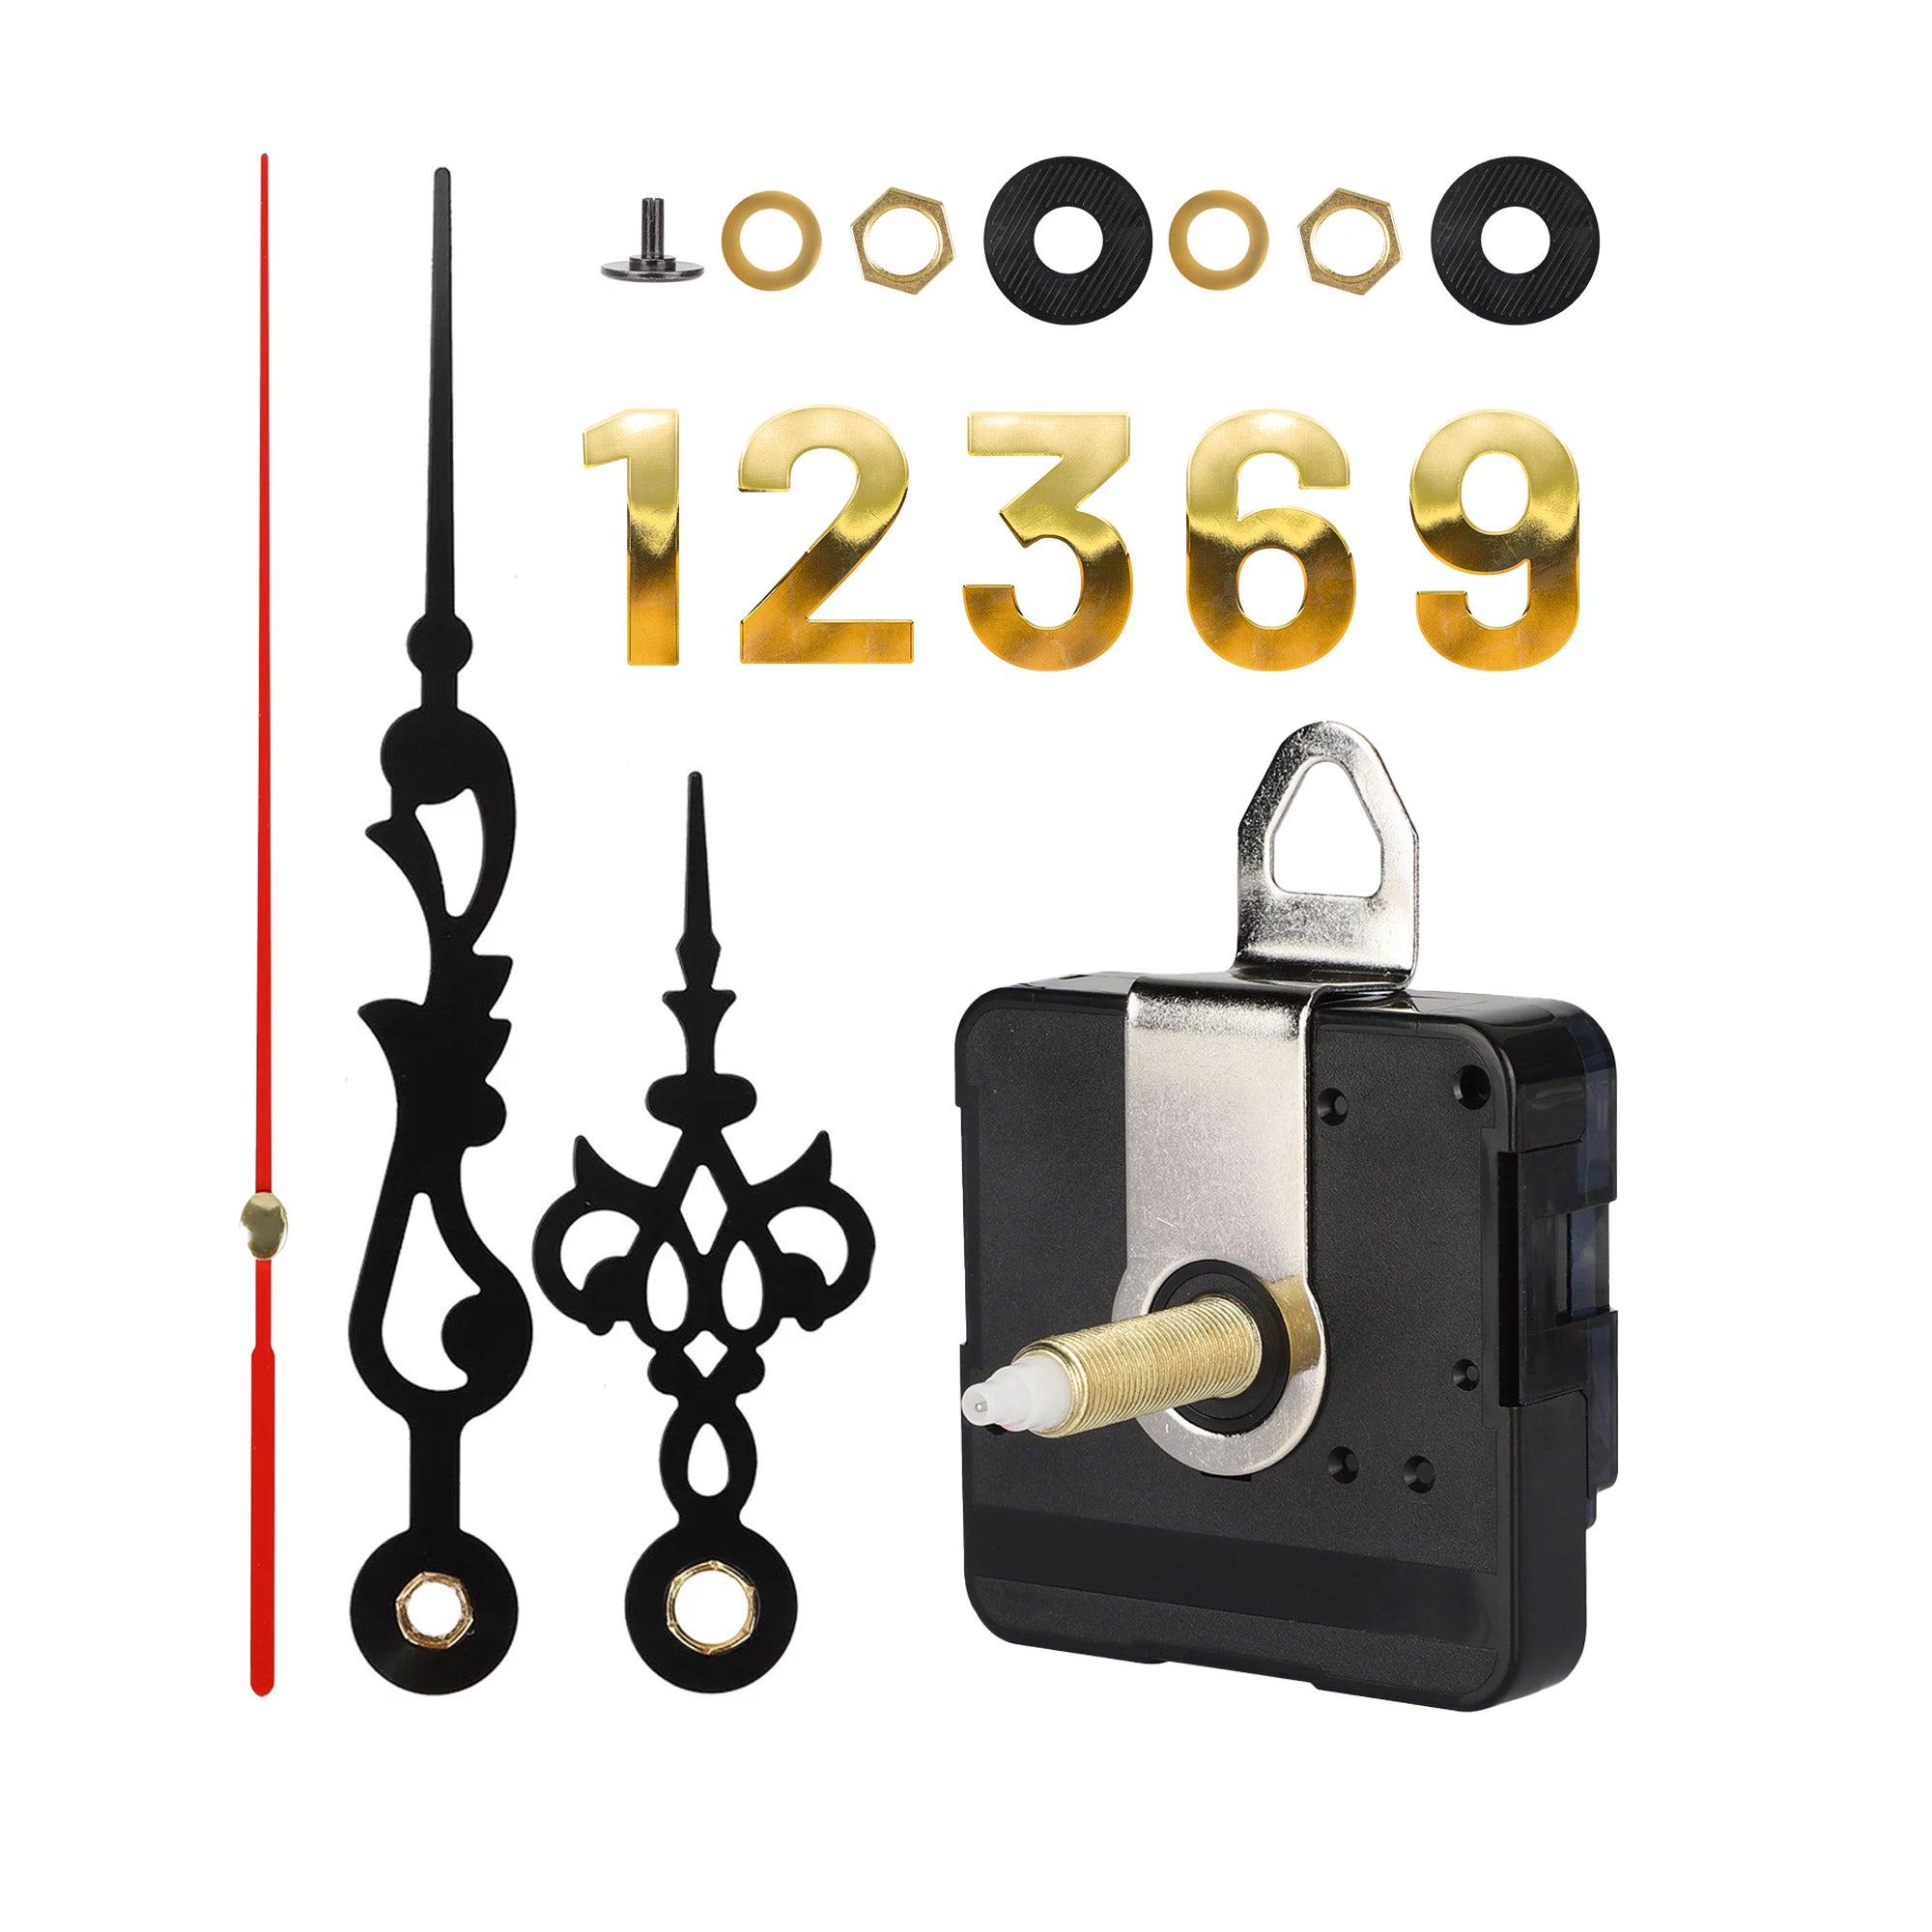 Woodberg - باكيج آلية الساعة (مُحرك الساعة + عقارب الساعة) مع أرقام ذهبية لصنع الساعات 